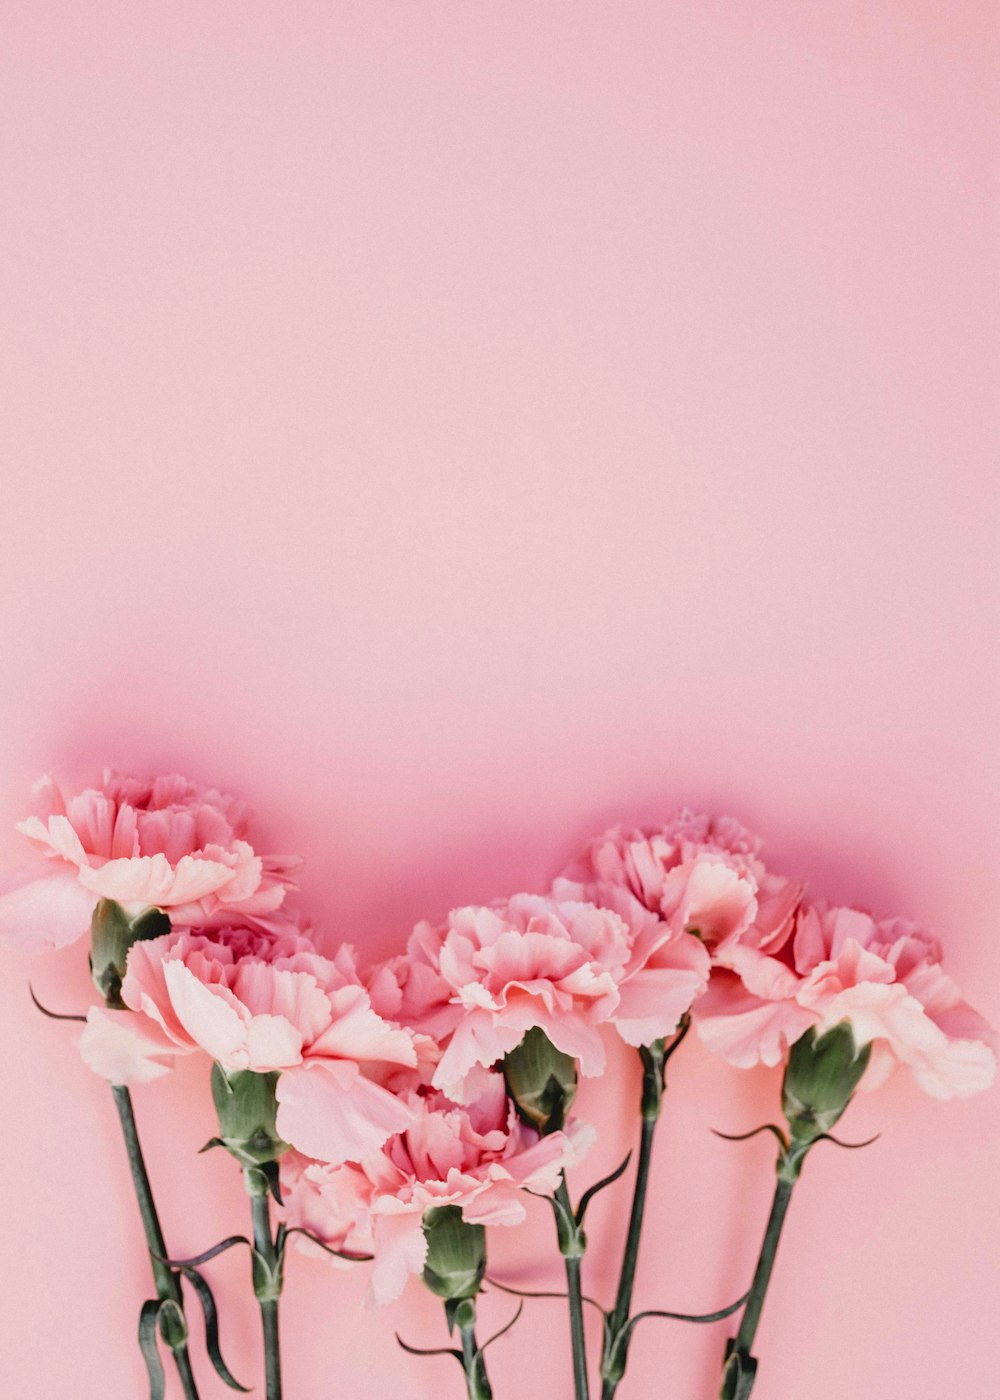 Rosa Blüten mit rosa Hintergrund.